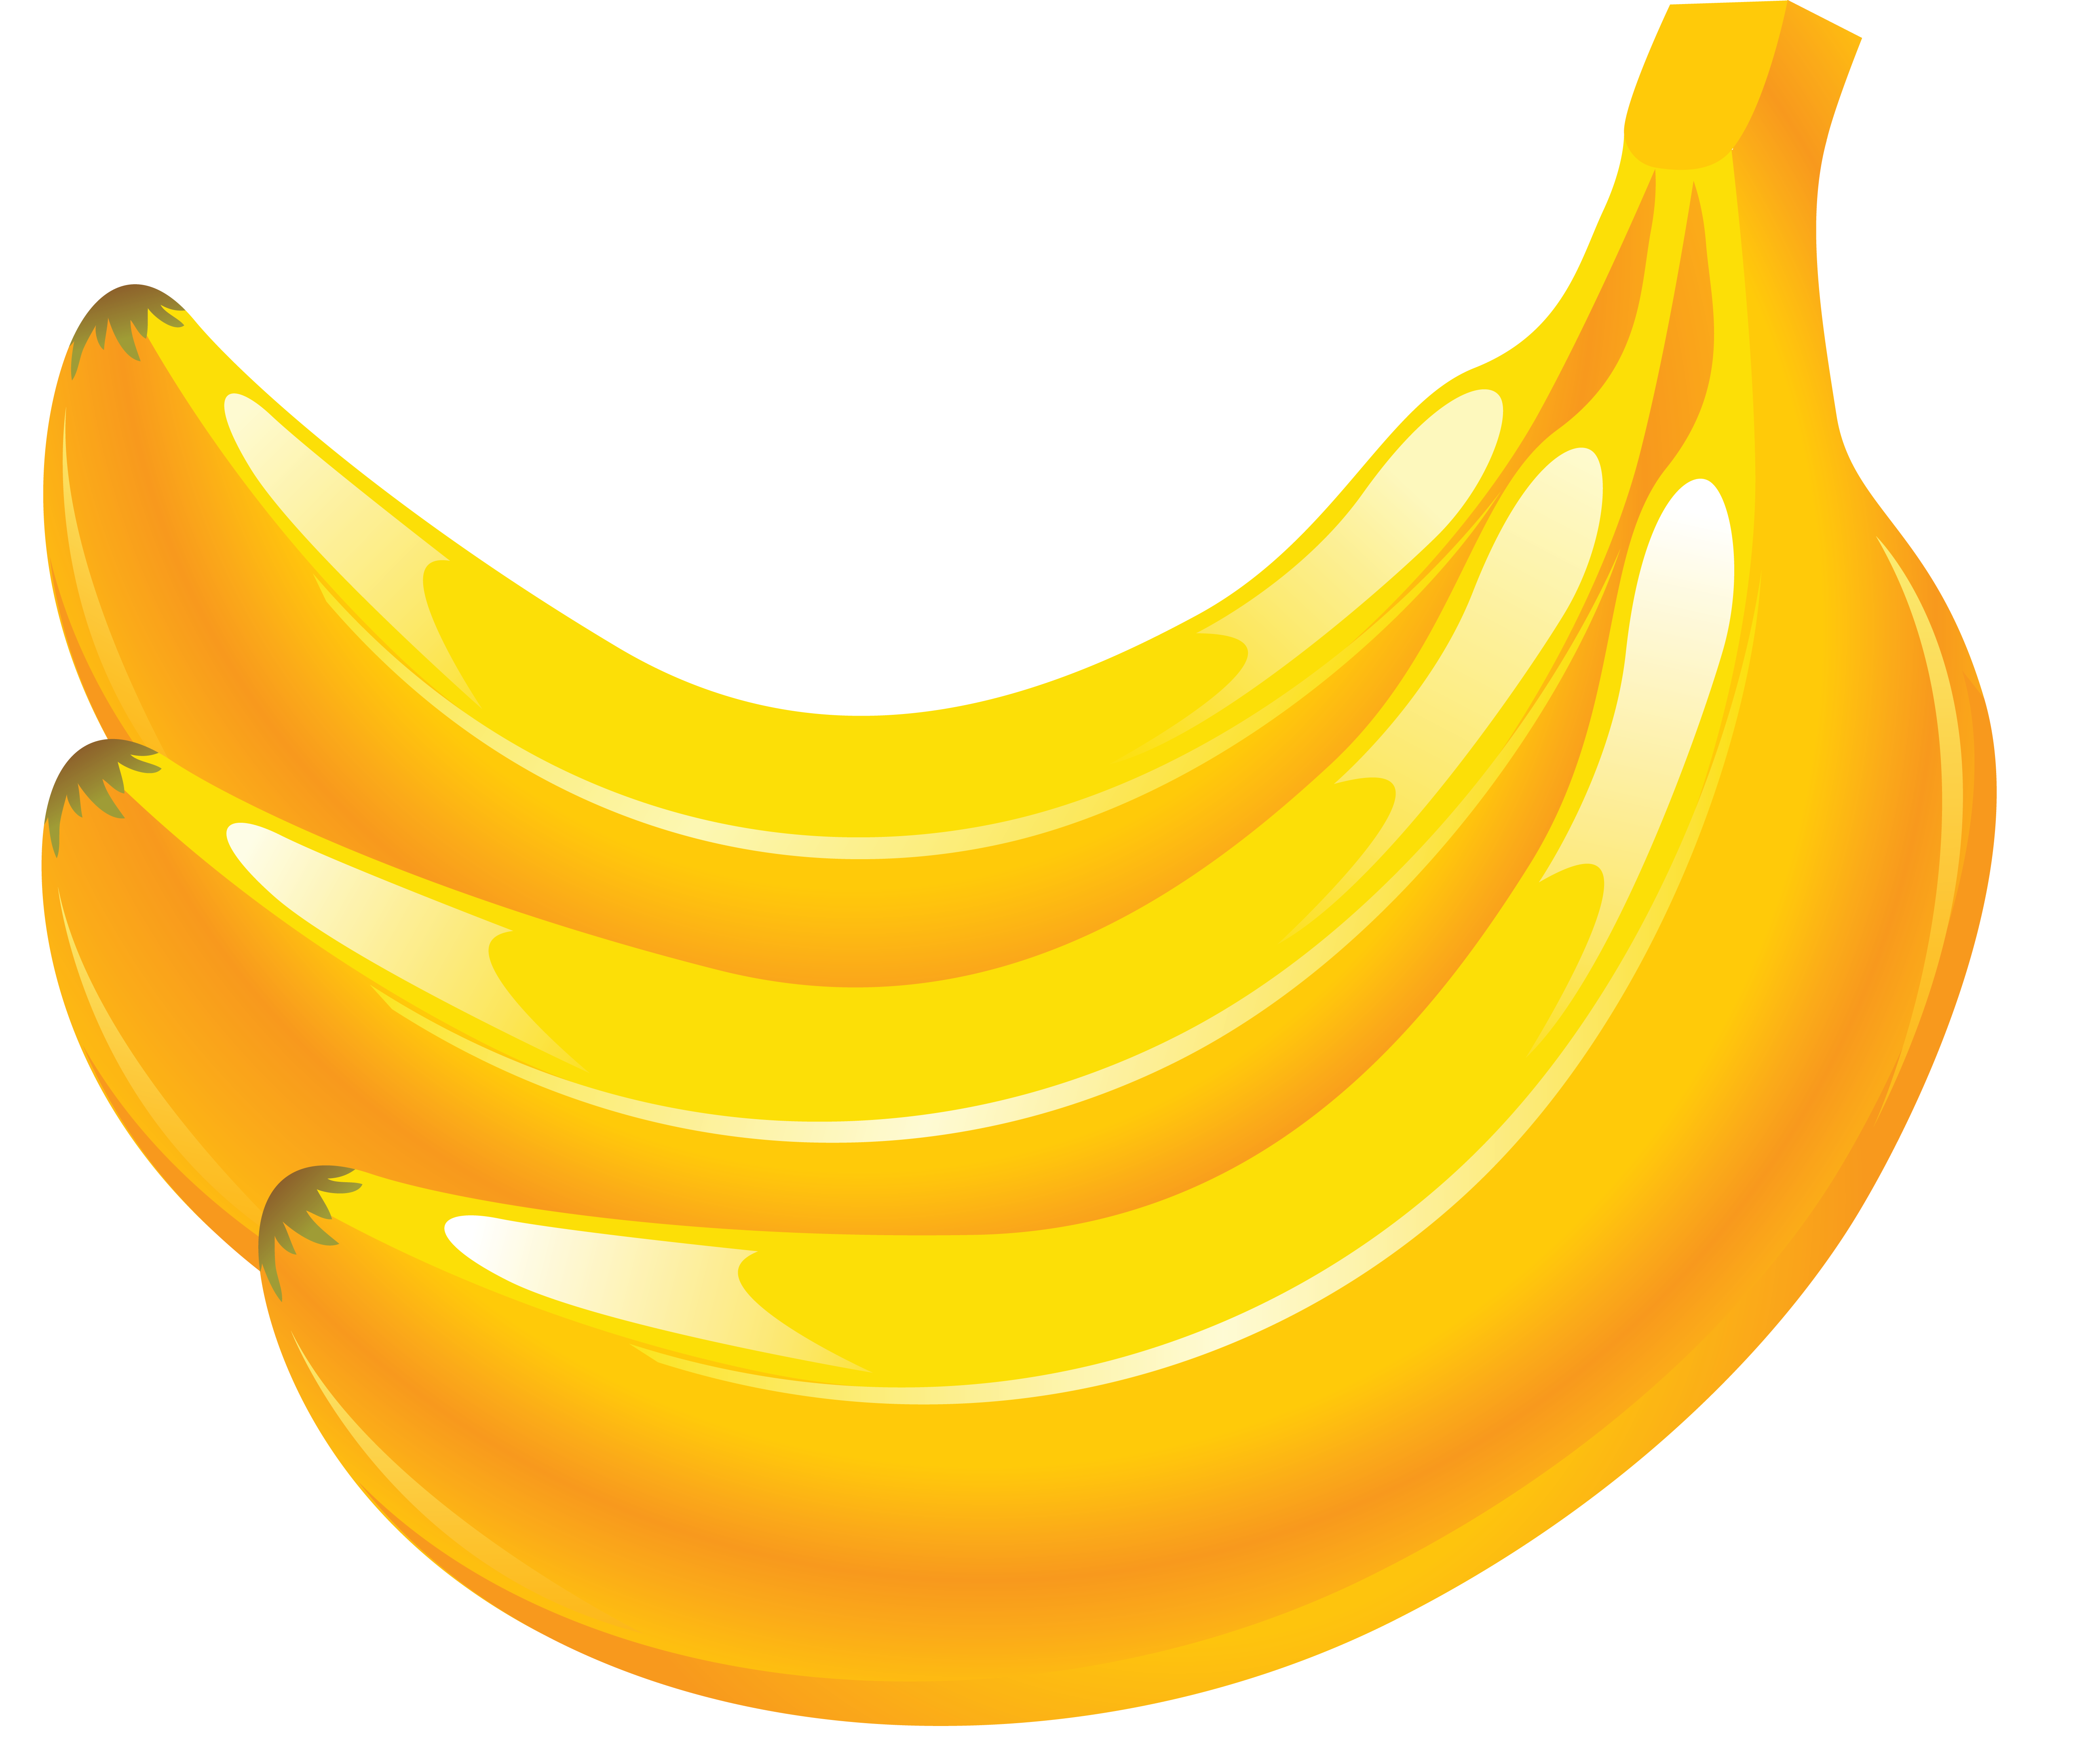 banana PNG